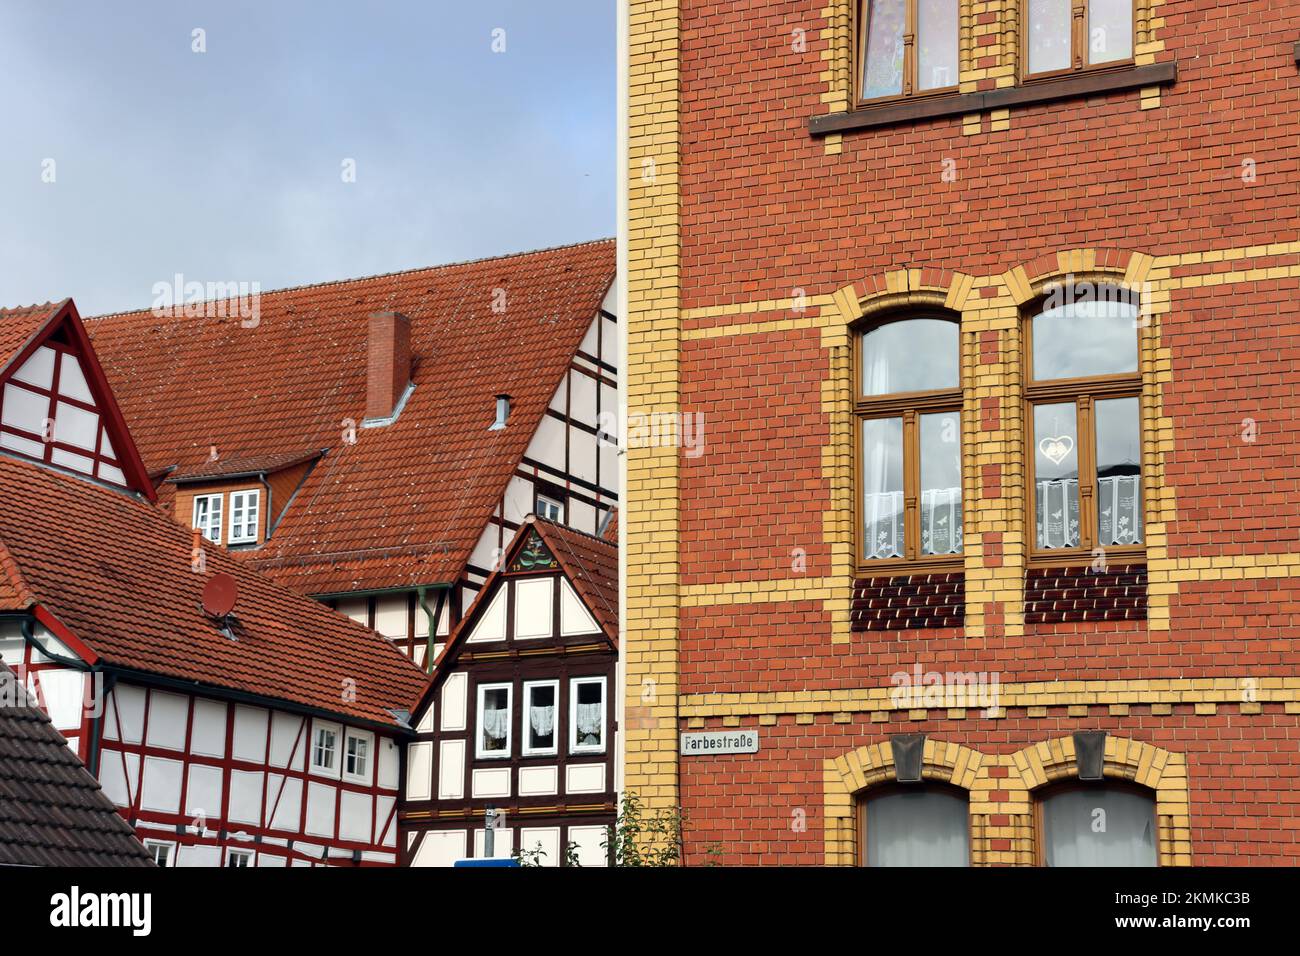 Fachwerkhäuser in der historischen Altstadt, Hessen, Deutschland, Dornroeschenstadt Hofgeismar Stock Photo